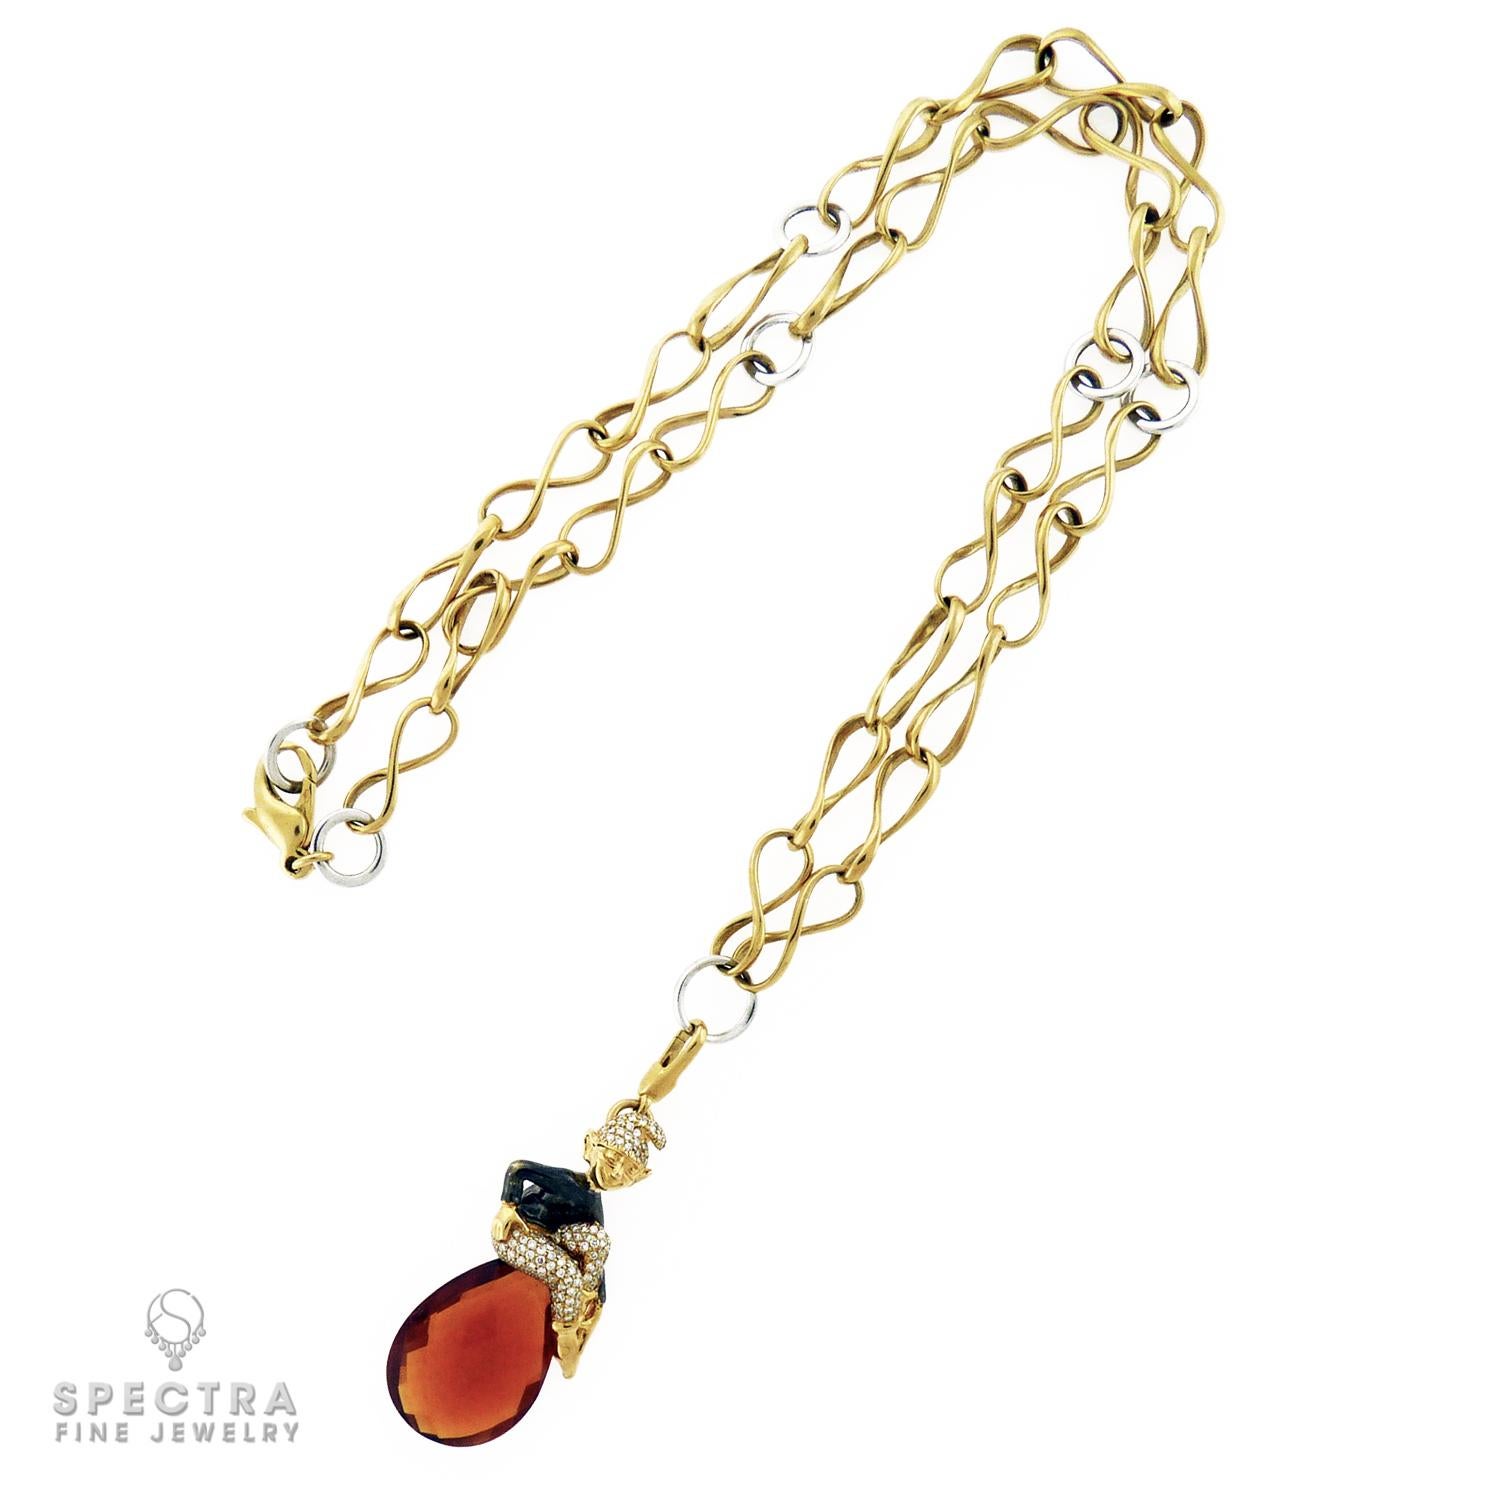 Diese bezaubernde Halskette von Crivelli aus Italien verzaubert Sie in die Welt der Elfen. Das Herzstück ist ein zauberhafter Elfen-Anhänger, der mit funkelnden Brauntopasen und Diamanten verziert ist. Die warmen Farben des zweifarbigen 18-karätigen